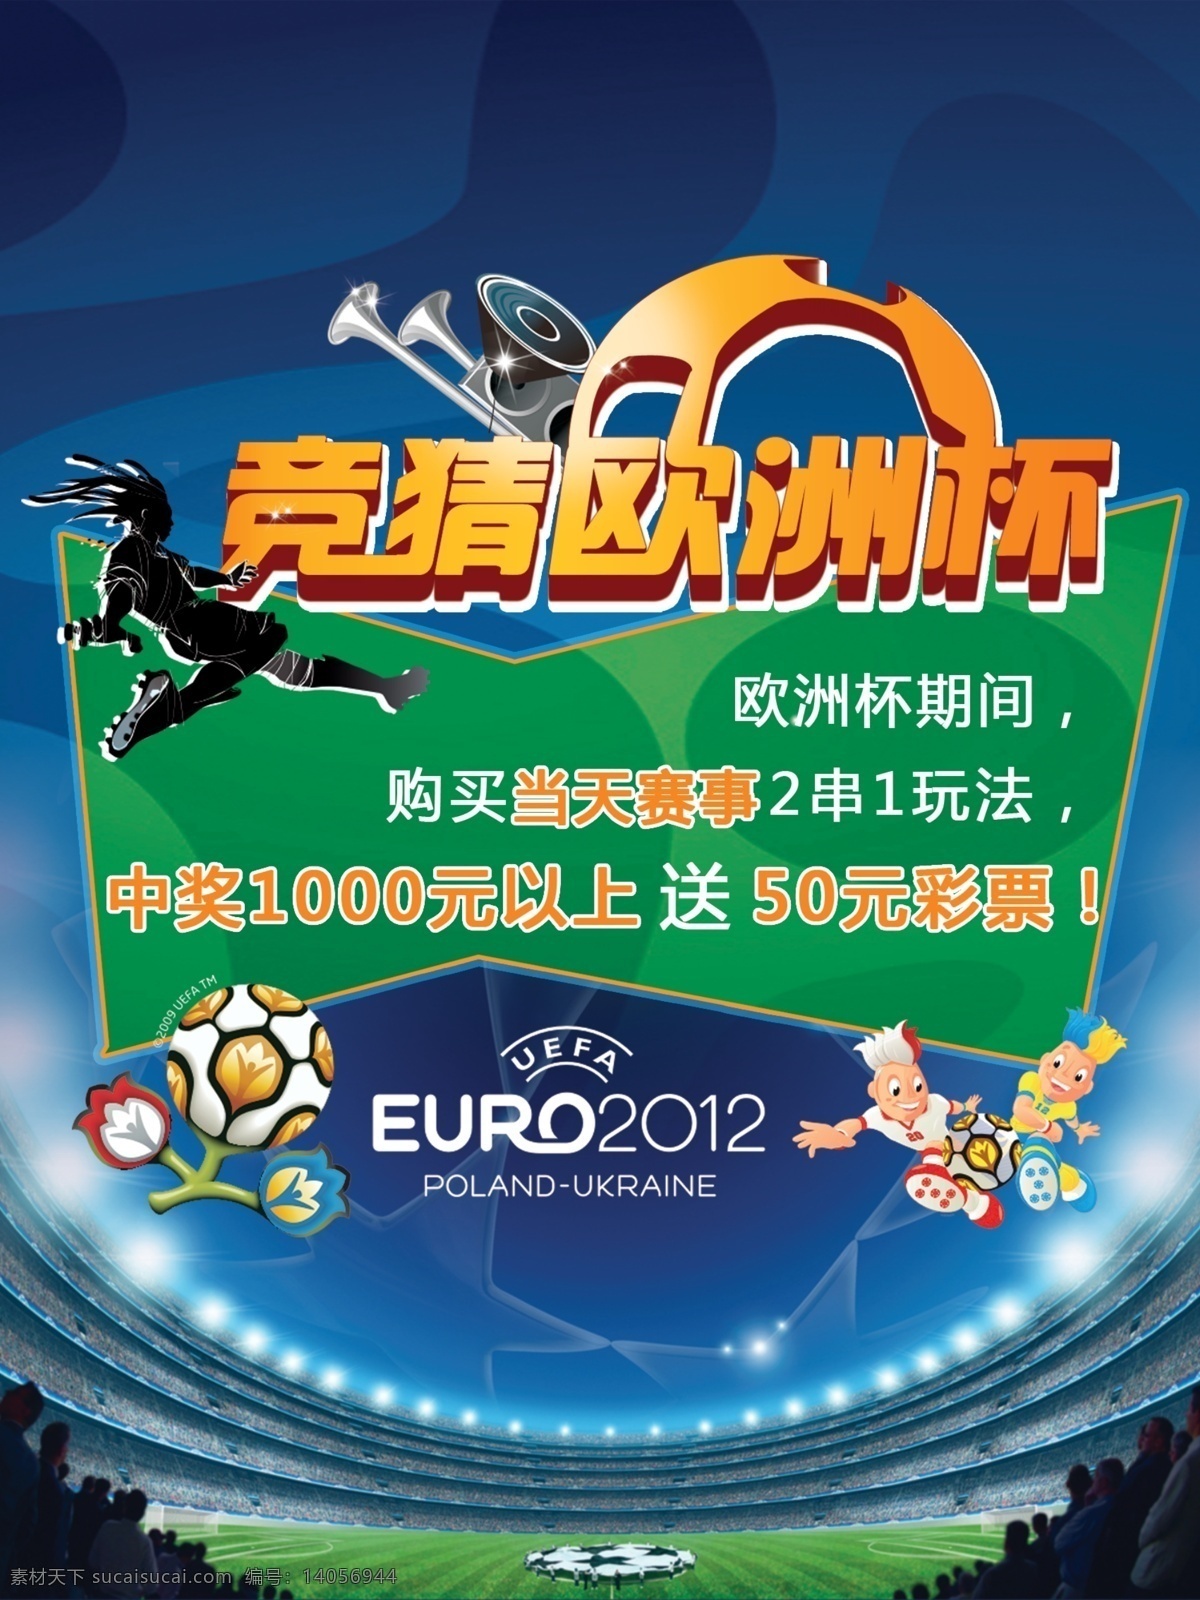 欧洲杯 足球彩票 海报 足球 彩票 世界杯 足球海报 体育海报 赛事 体育彩票